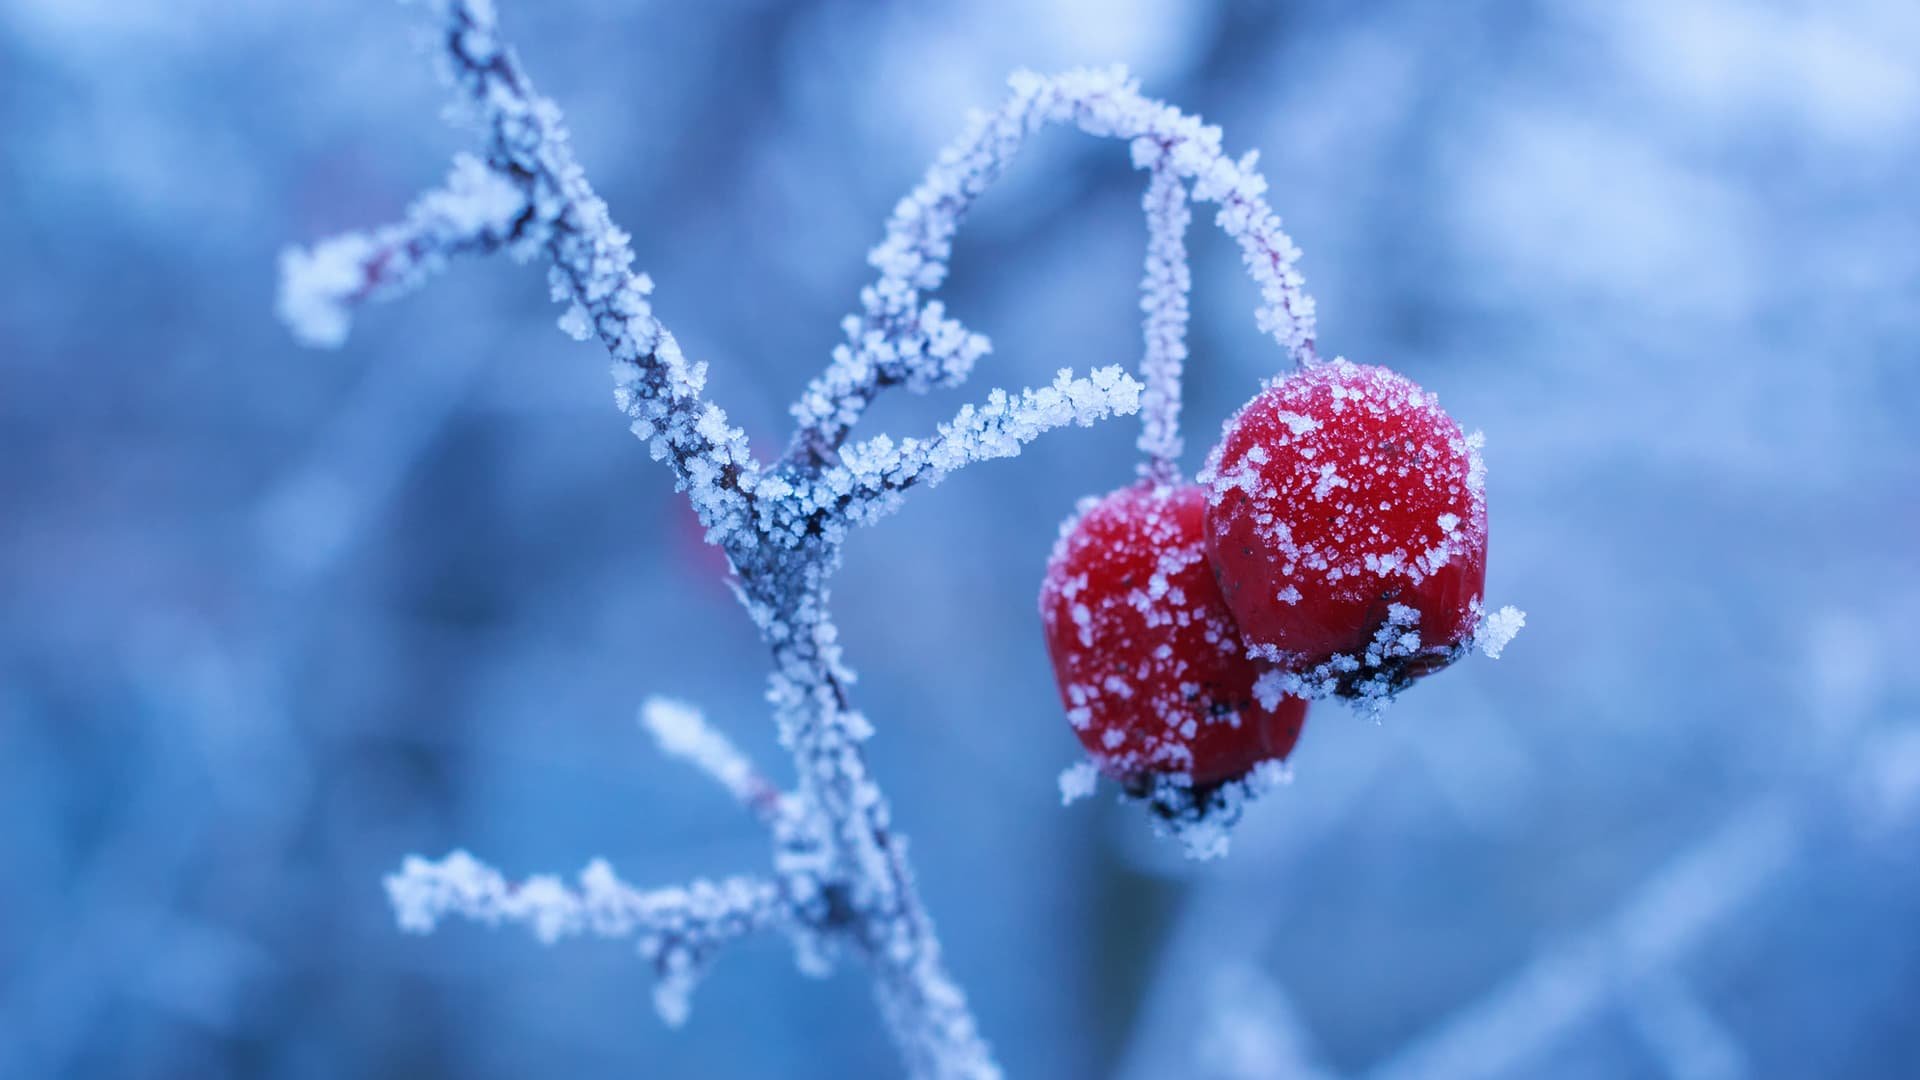 Мороз та сніг: синоптики попереджають про похолодання — PMG.ua